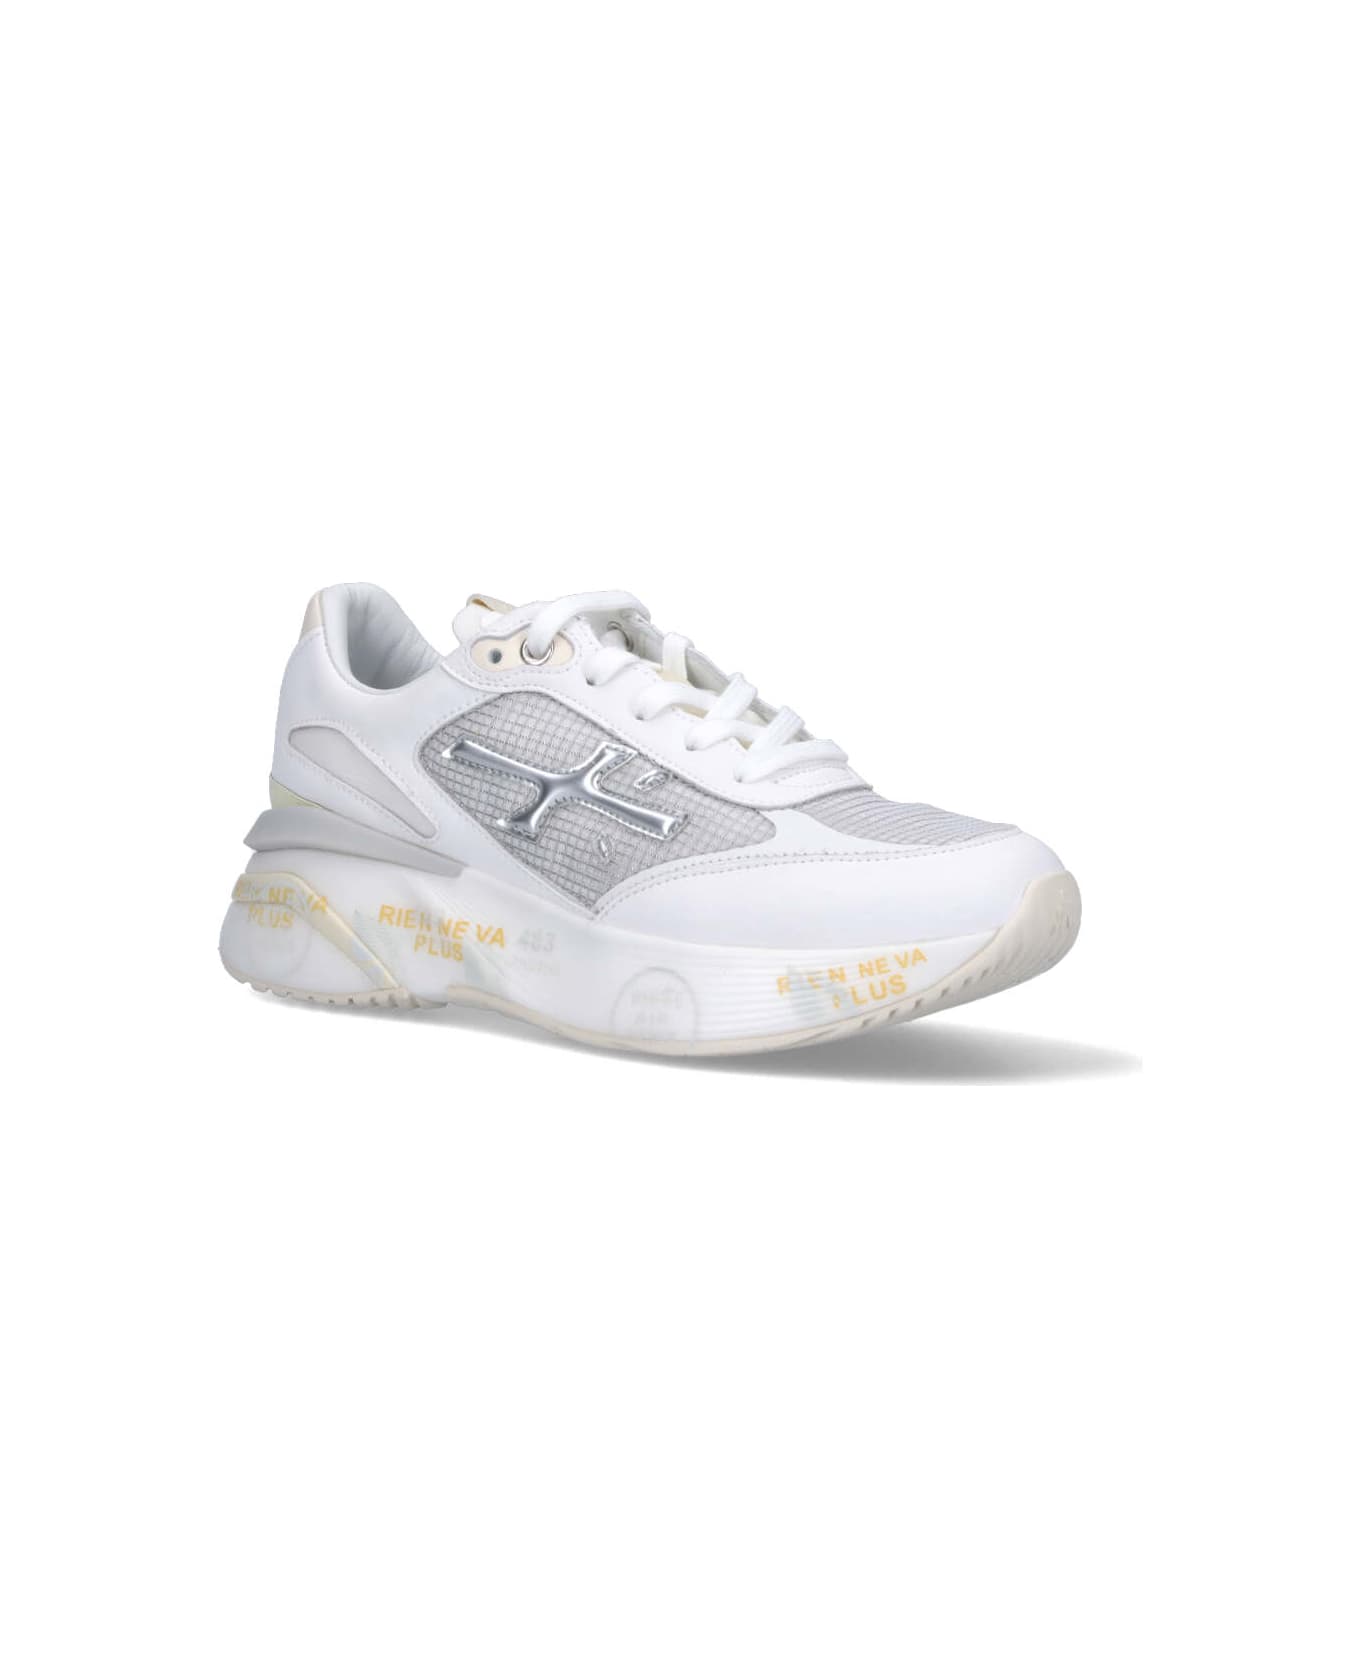 Premiata White Silver Moerund Sneakers - Bianco